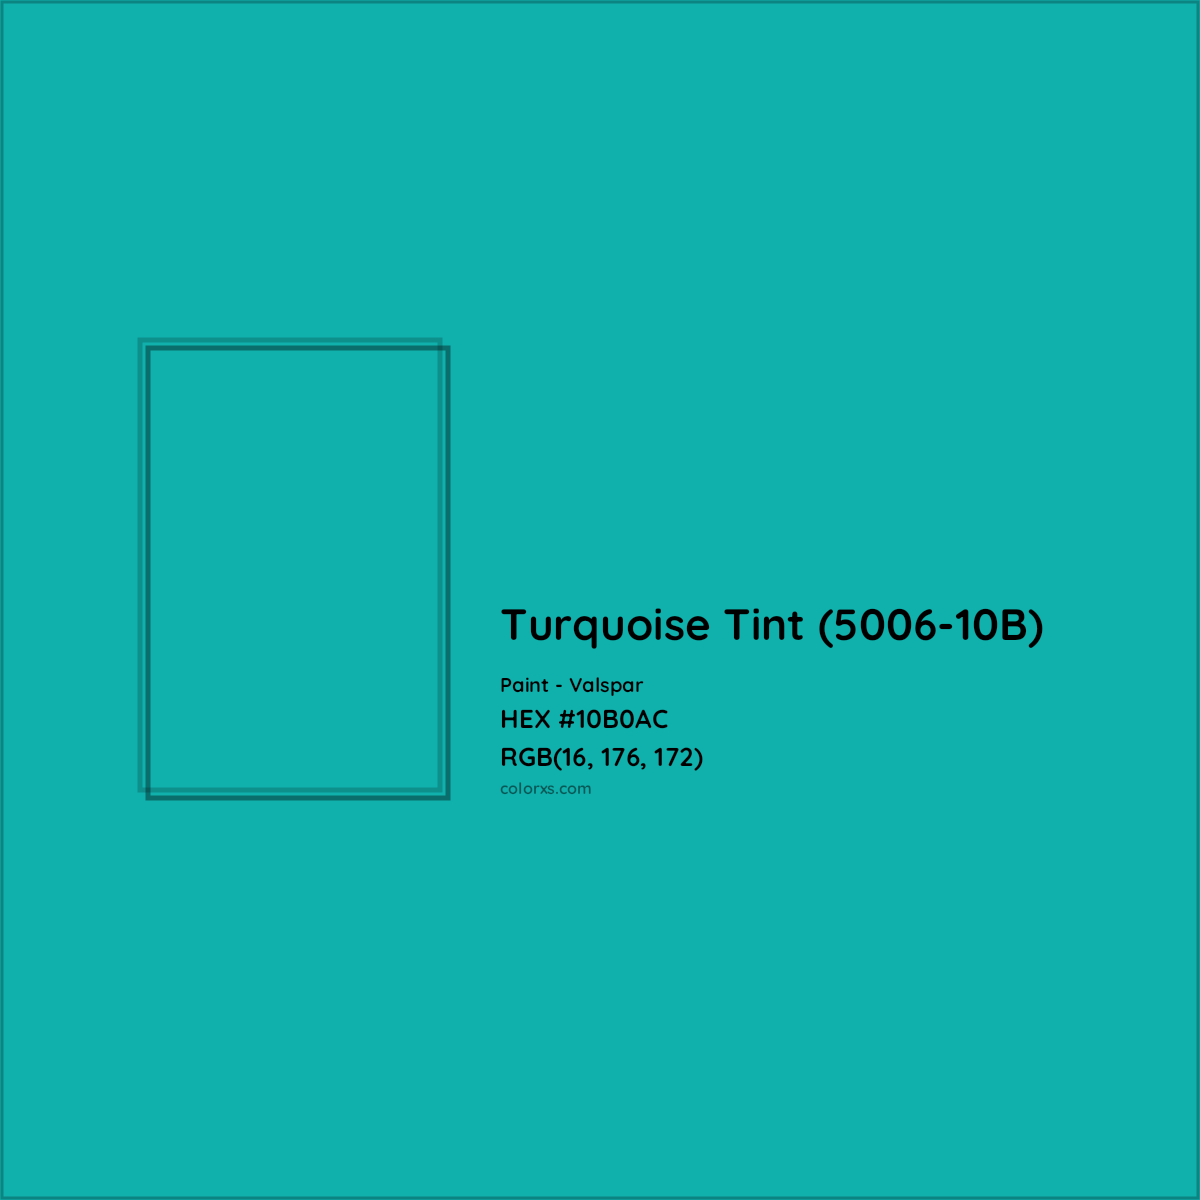 HEX #10B0AC Turquoise Tint (5006-10B) Paint Valspar - Color Code